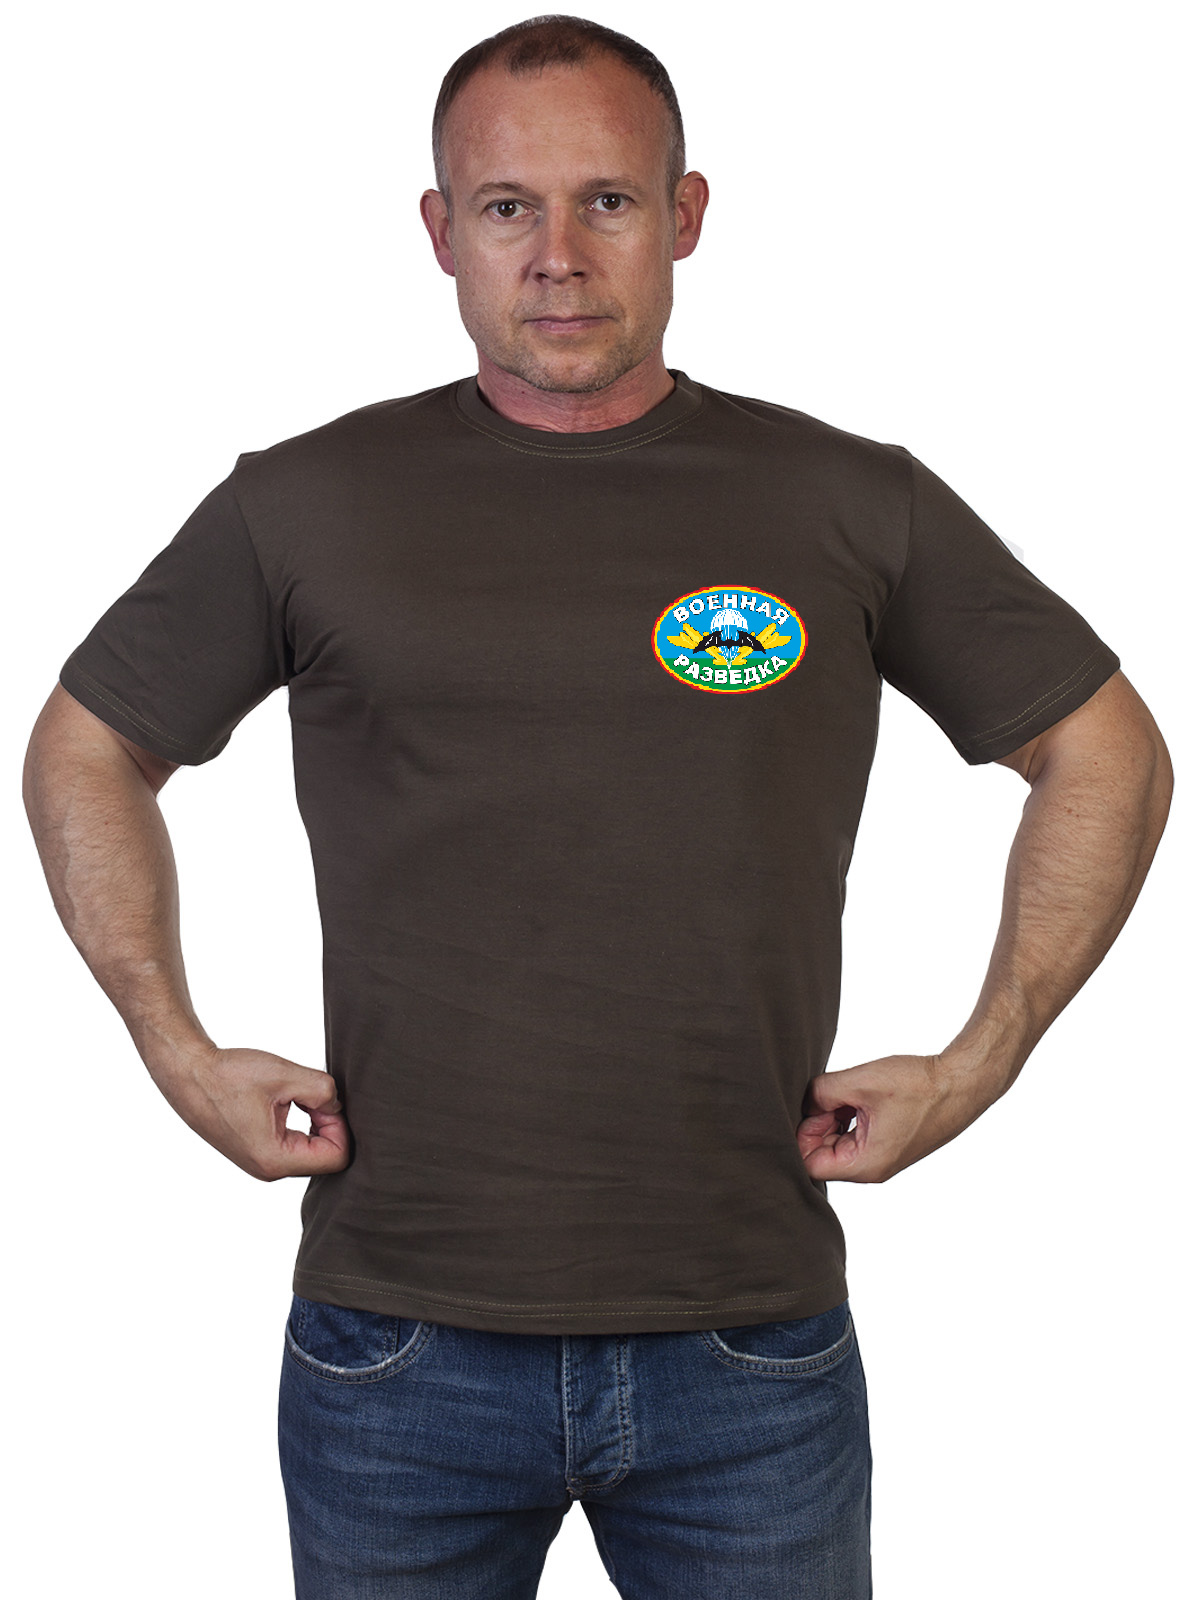 Оливковая футболка "Военная разведка" 